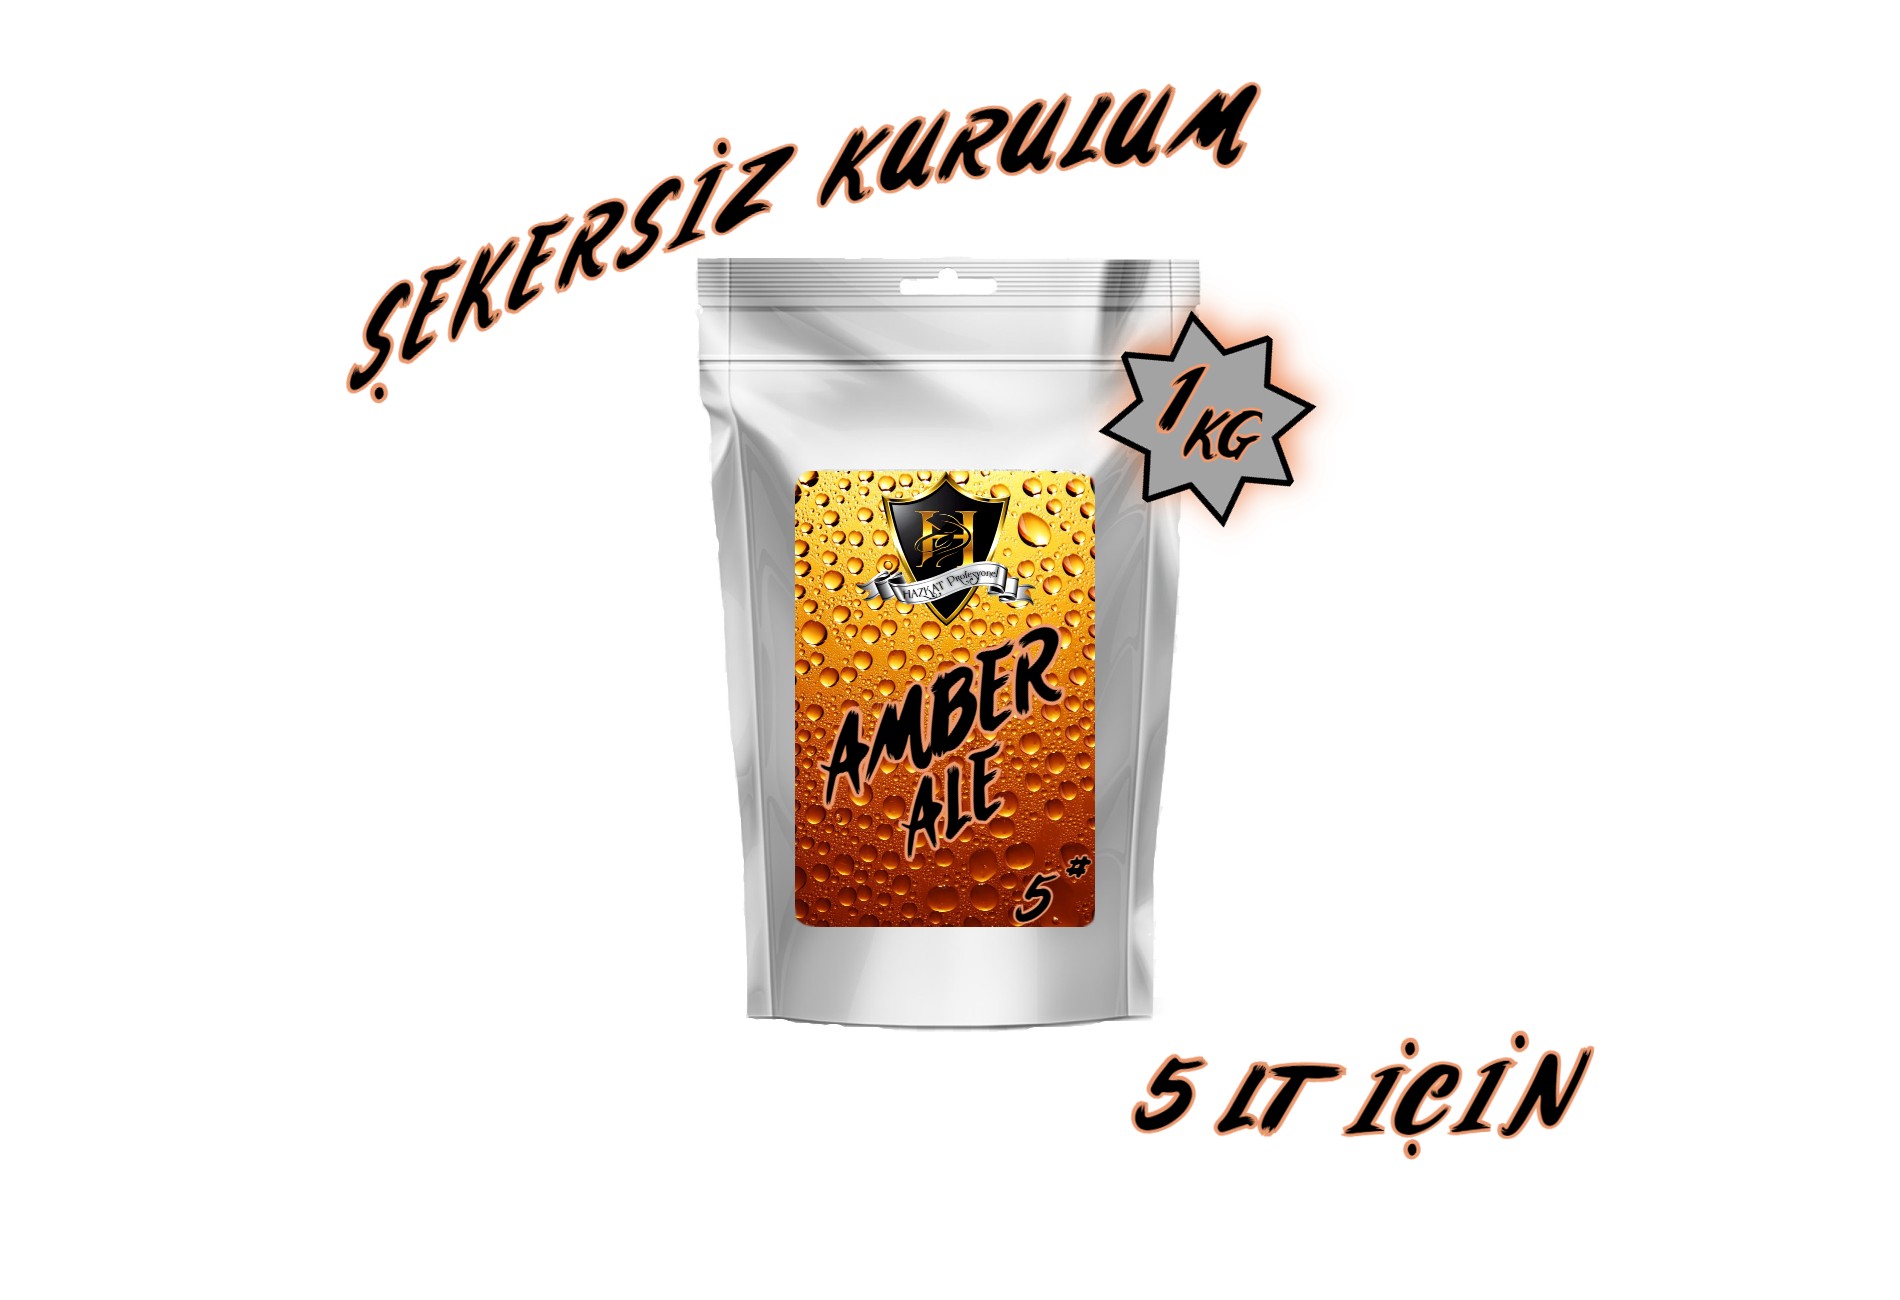 Amber Ale 5 lt Malt Özü Şekersiz kurulum